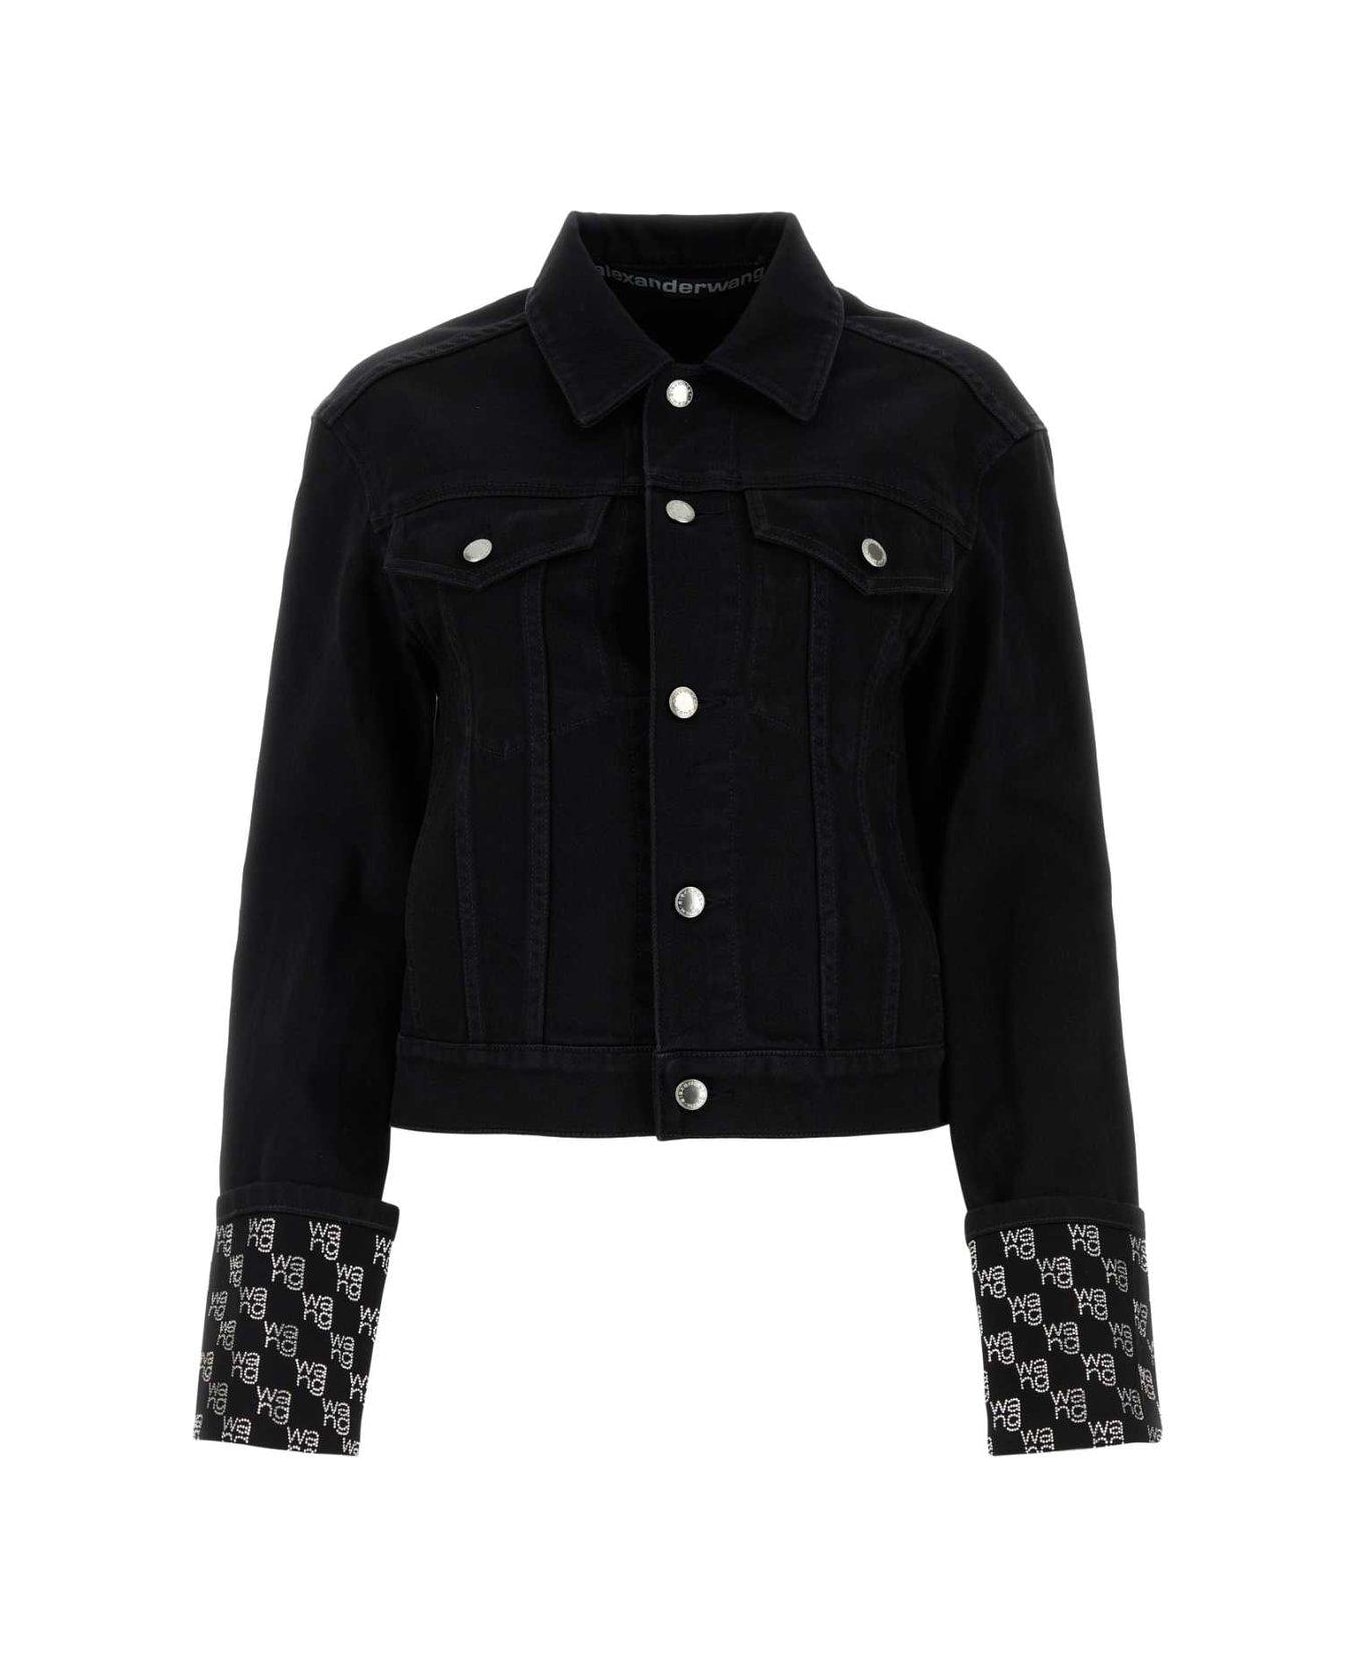 Alexander Wang Long Sleeved Embellished Denim Jacket - Washed Black